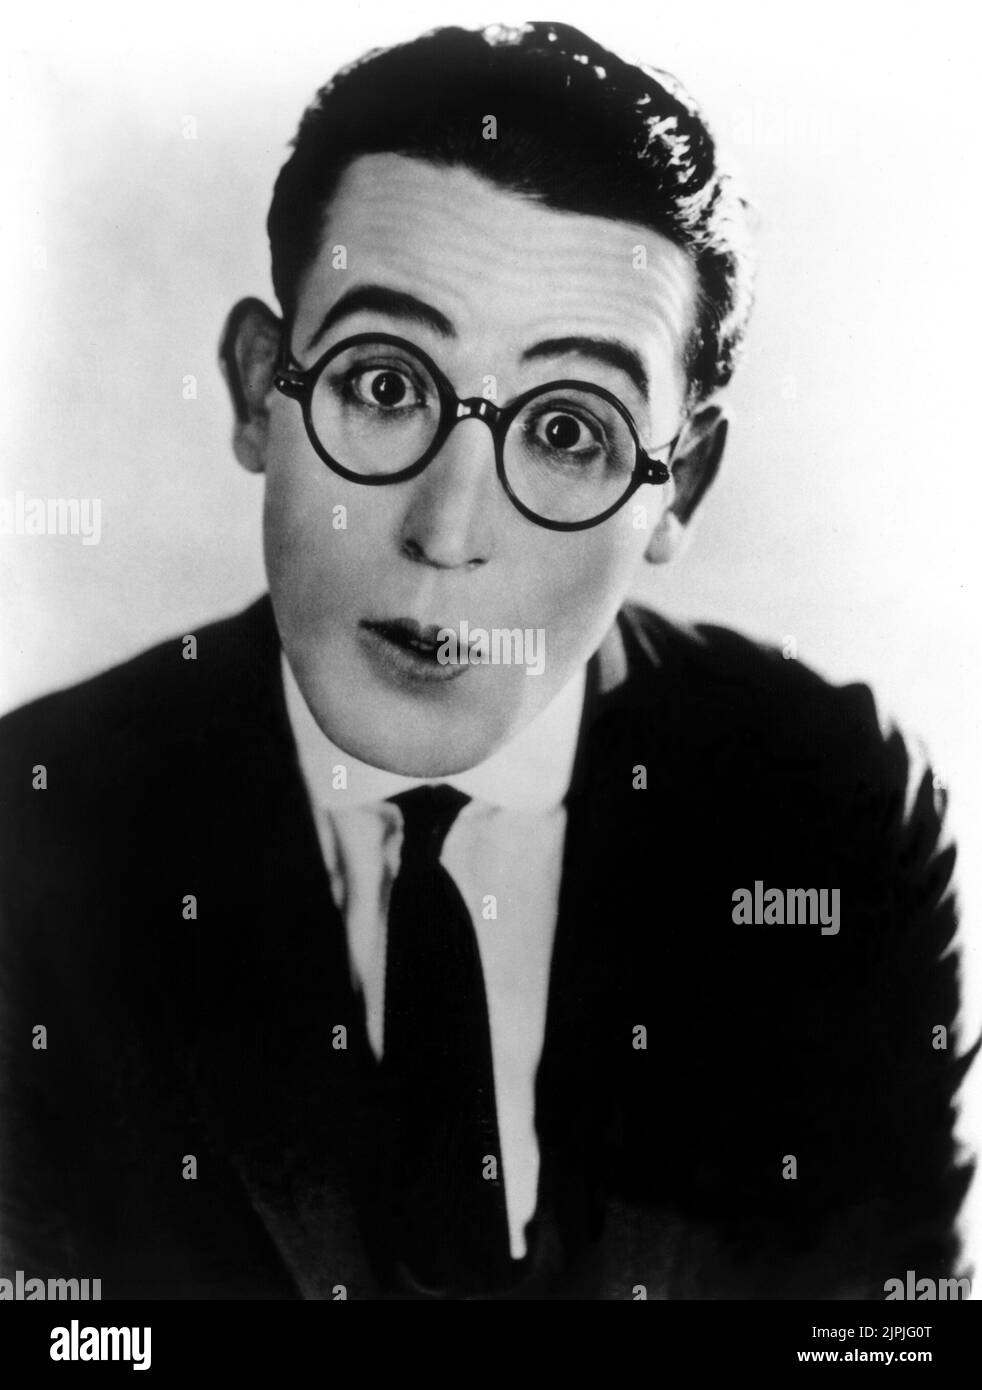 El actor americano HAROLD LLOYD ( 1893 - 1971 ) - CINE MUTO - occhiali - gafas - comiche - corbata - cravatta --- Archivio GBB Foto de stock